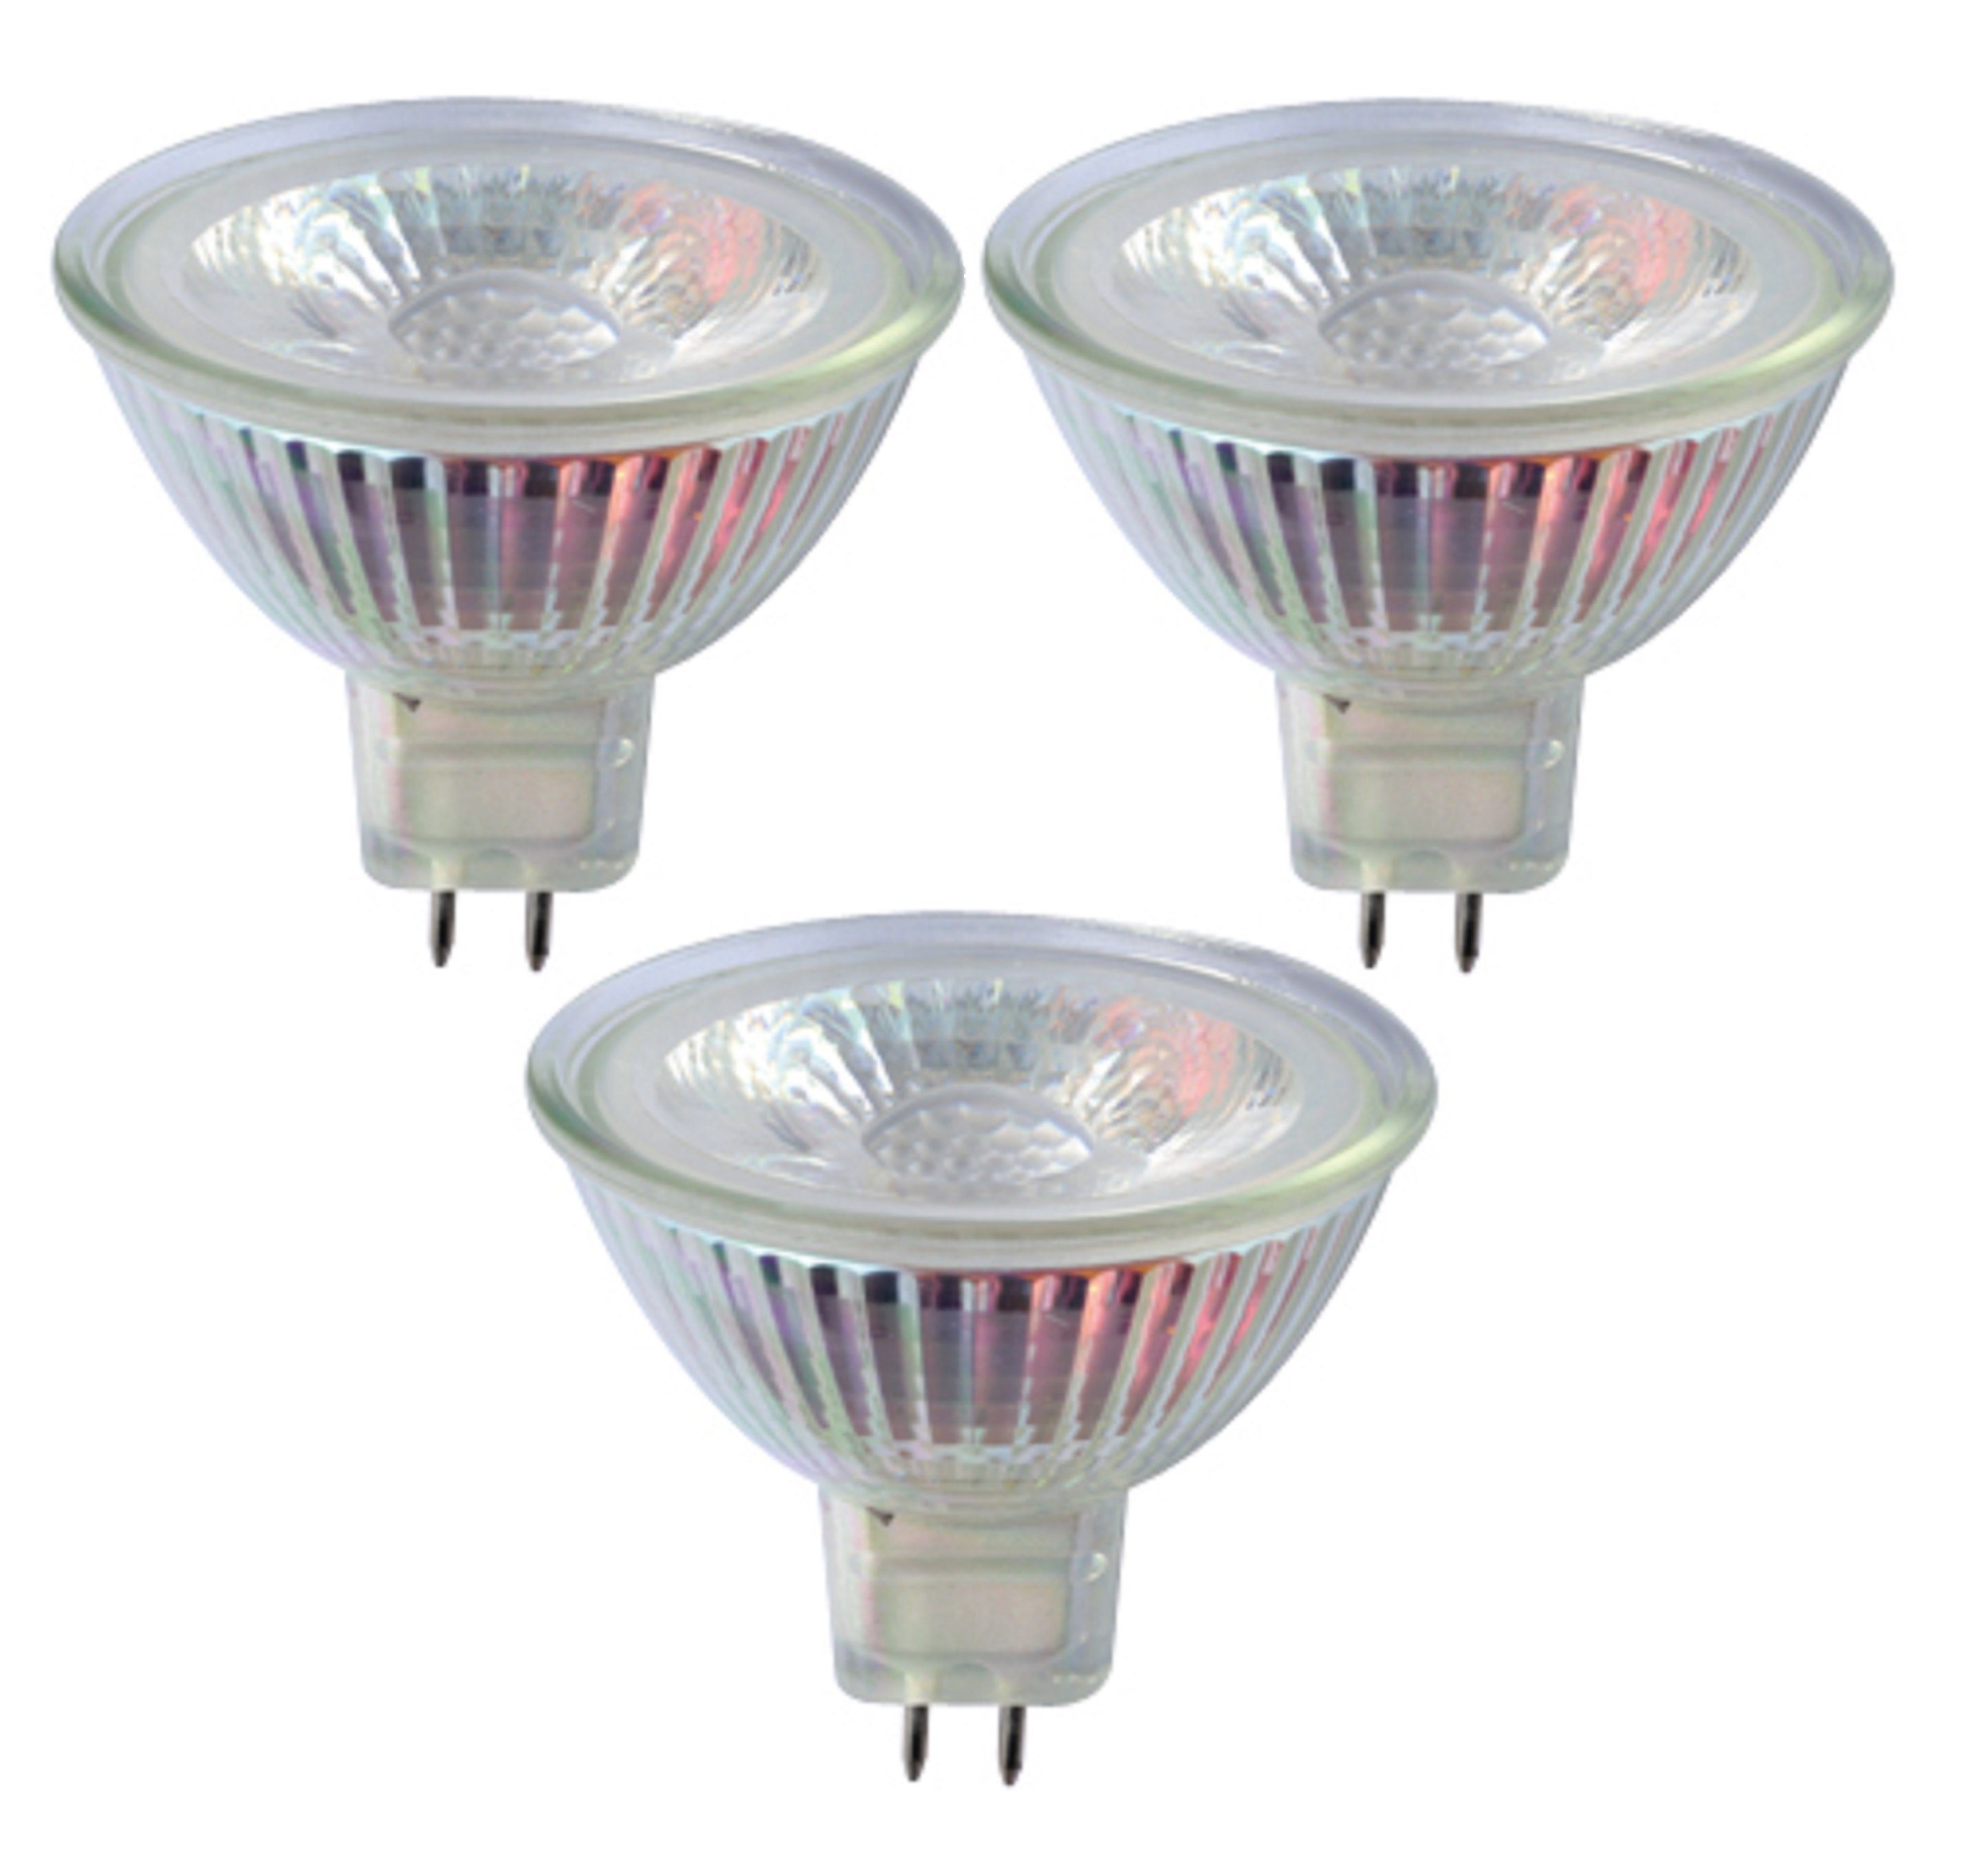 TRANGO LED-Leuchtmittel, GU 5,3, MR16, 3 St., 3er Set MR16-NT3 LED  Leuchtmittel mit MR16 Fassung zum Austausch herkömmlicher Halogen  Leuchtmittel MR16 I GU5.3 I G4 12 Volt 3000K warmweiß Glühlampe, Reflektor  Lampe,